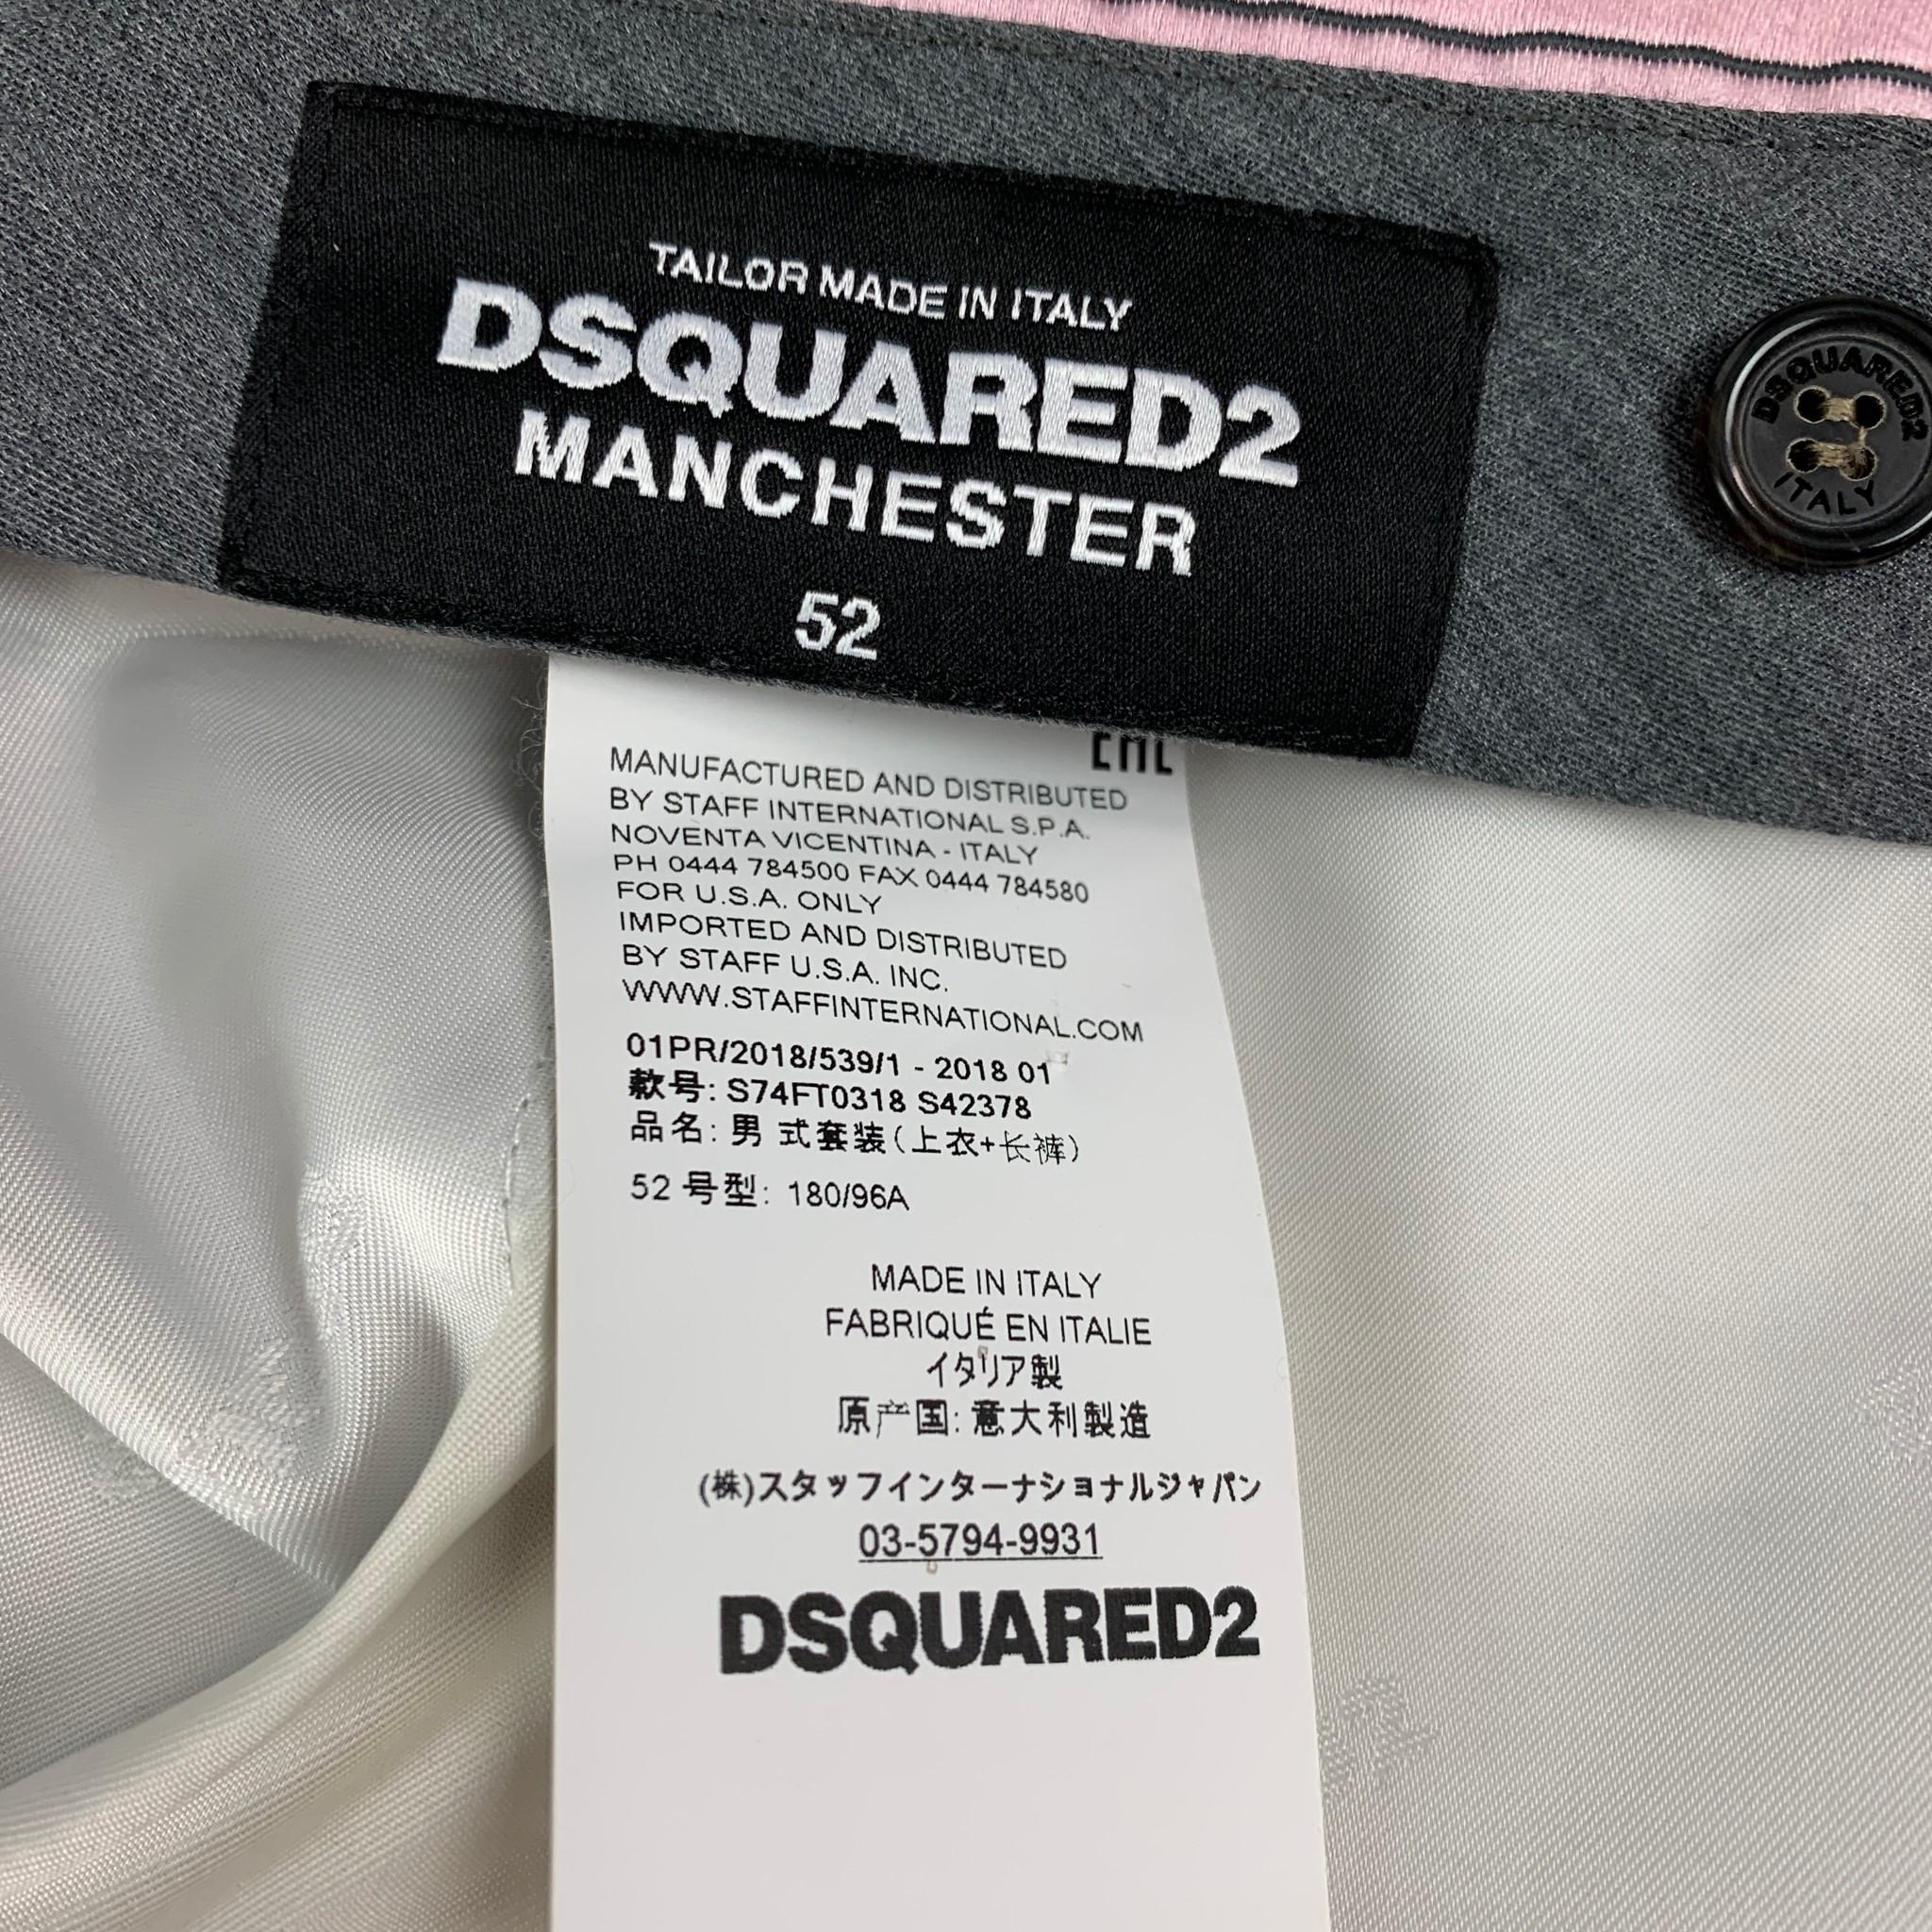 DSQUARED2 MANCHESTER Size 42 Khaki Cotton Notch Lapel Suit 5